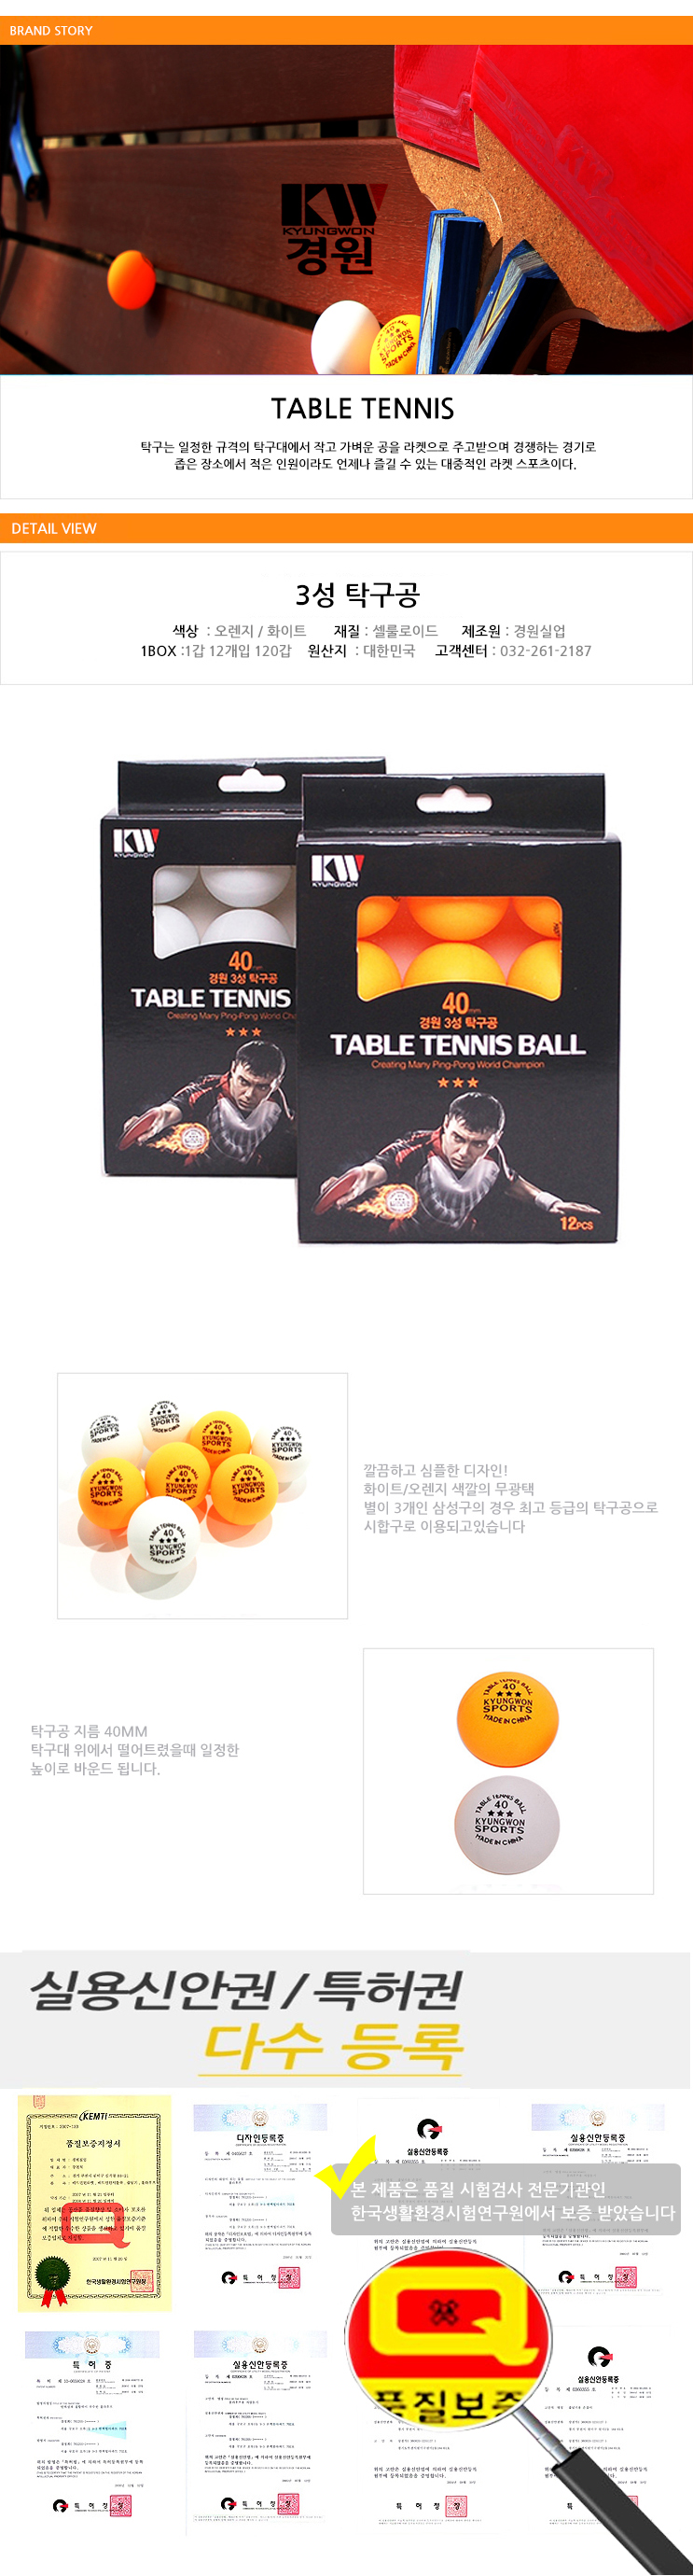 table tennis ball.jpg